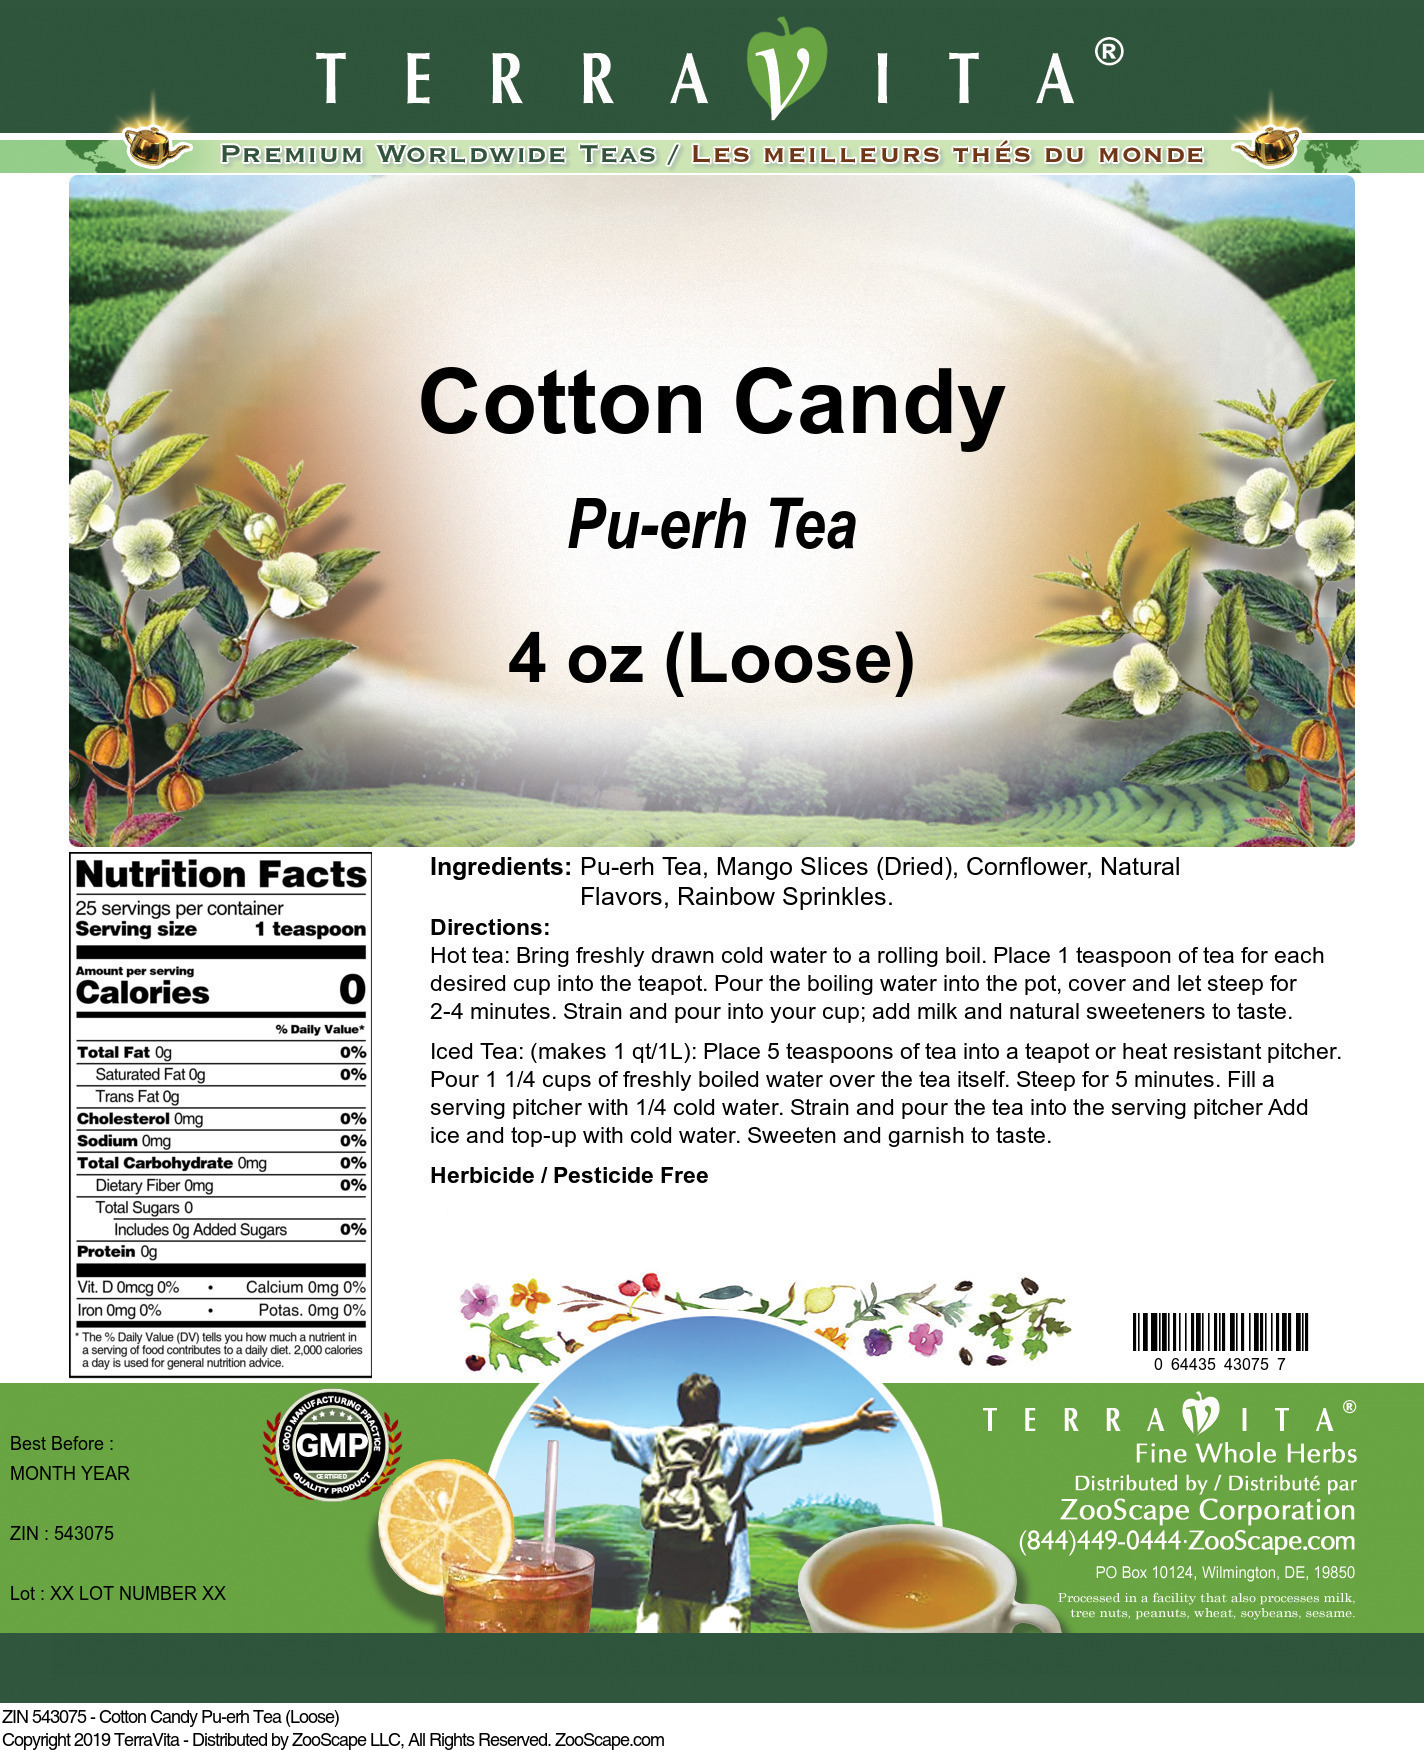 Cotton Candy Pu-erh Tea (Loose) - Label